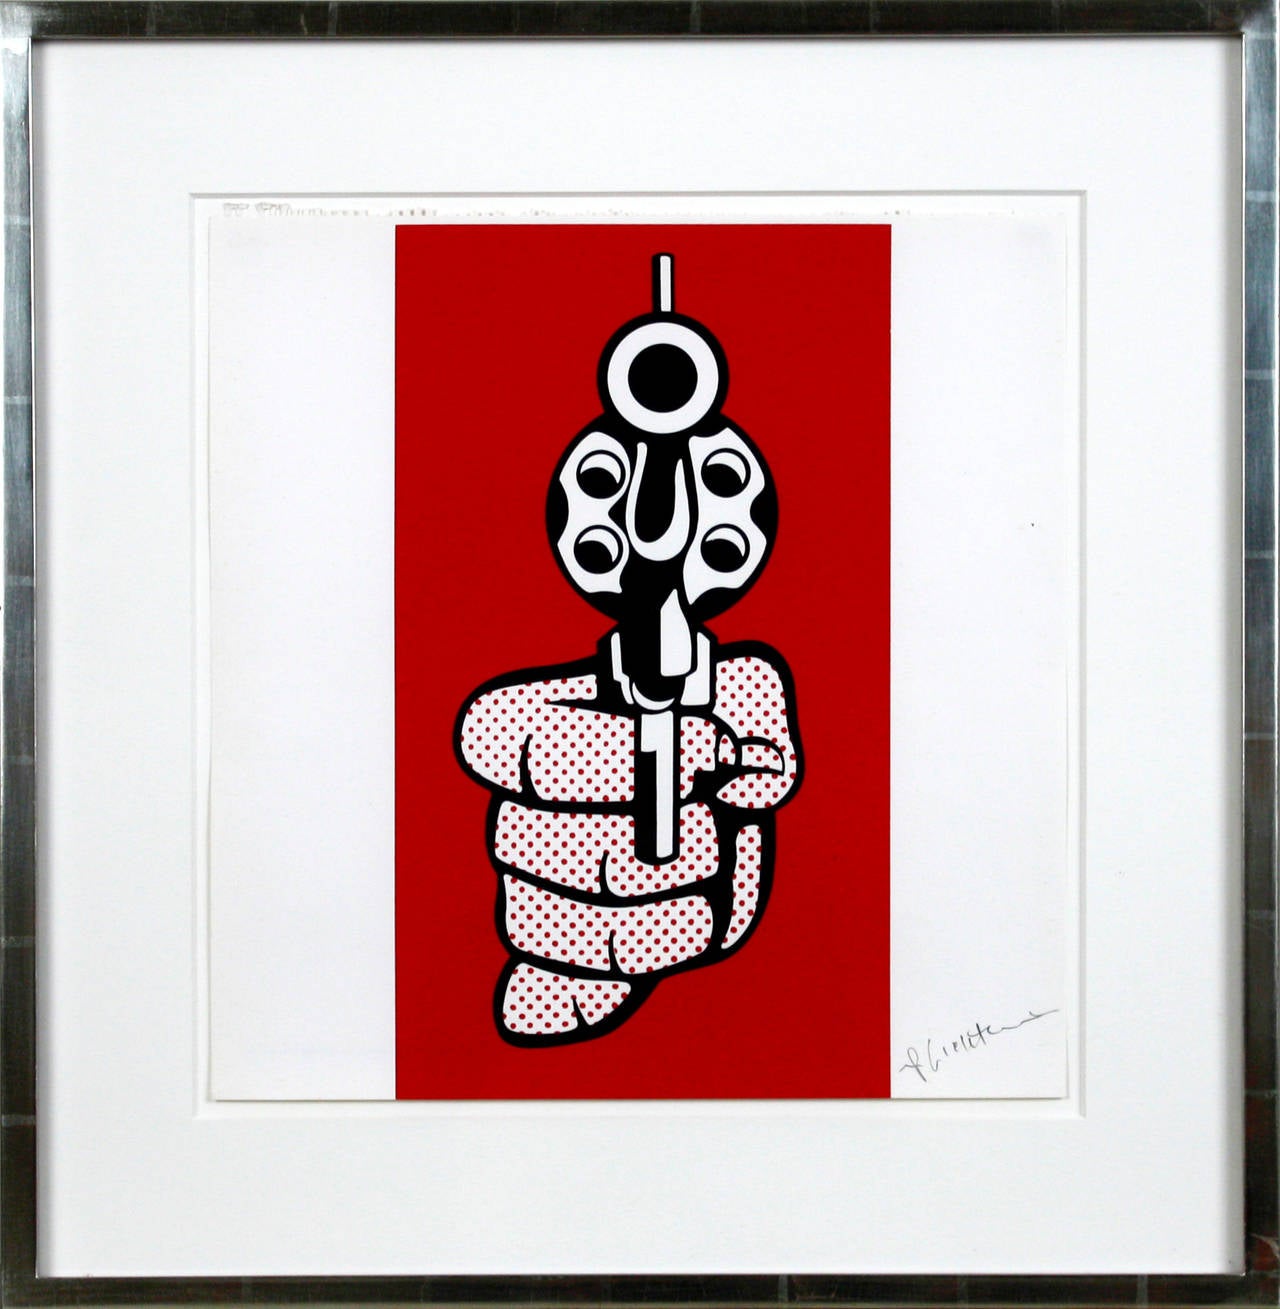 Pistol - Print by Roy Lichtenstein